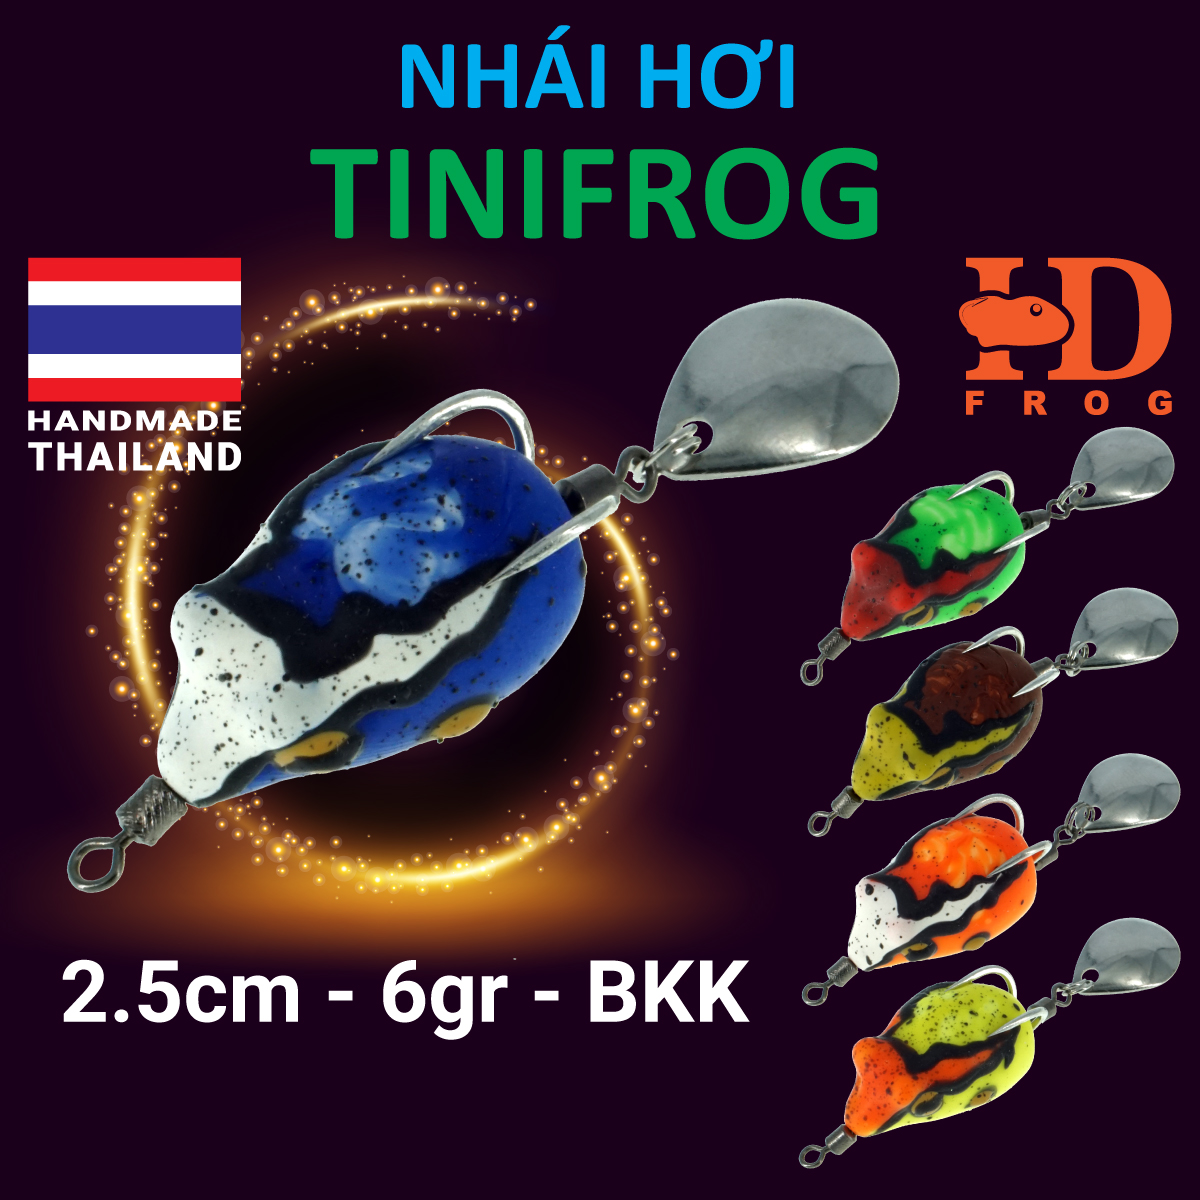 NHÁI HƠI FROG TINI - mồi giả Thái Lan câu lure cá lóc giá rẻ siêu nhạy - 2.5cm - 6gr